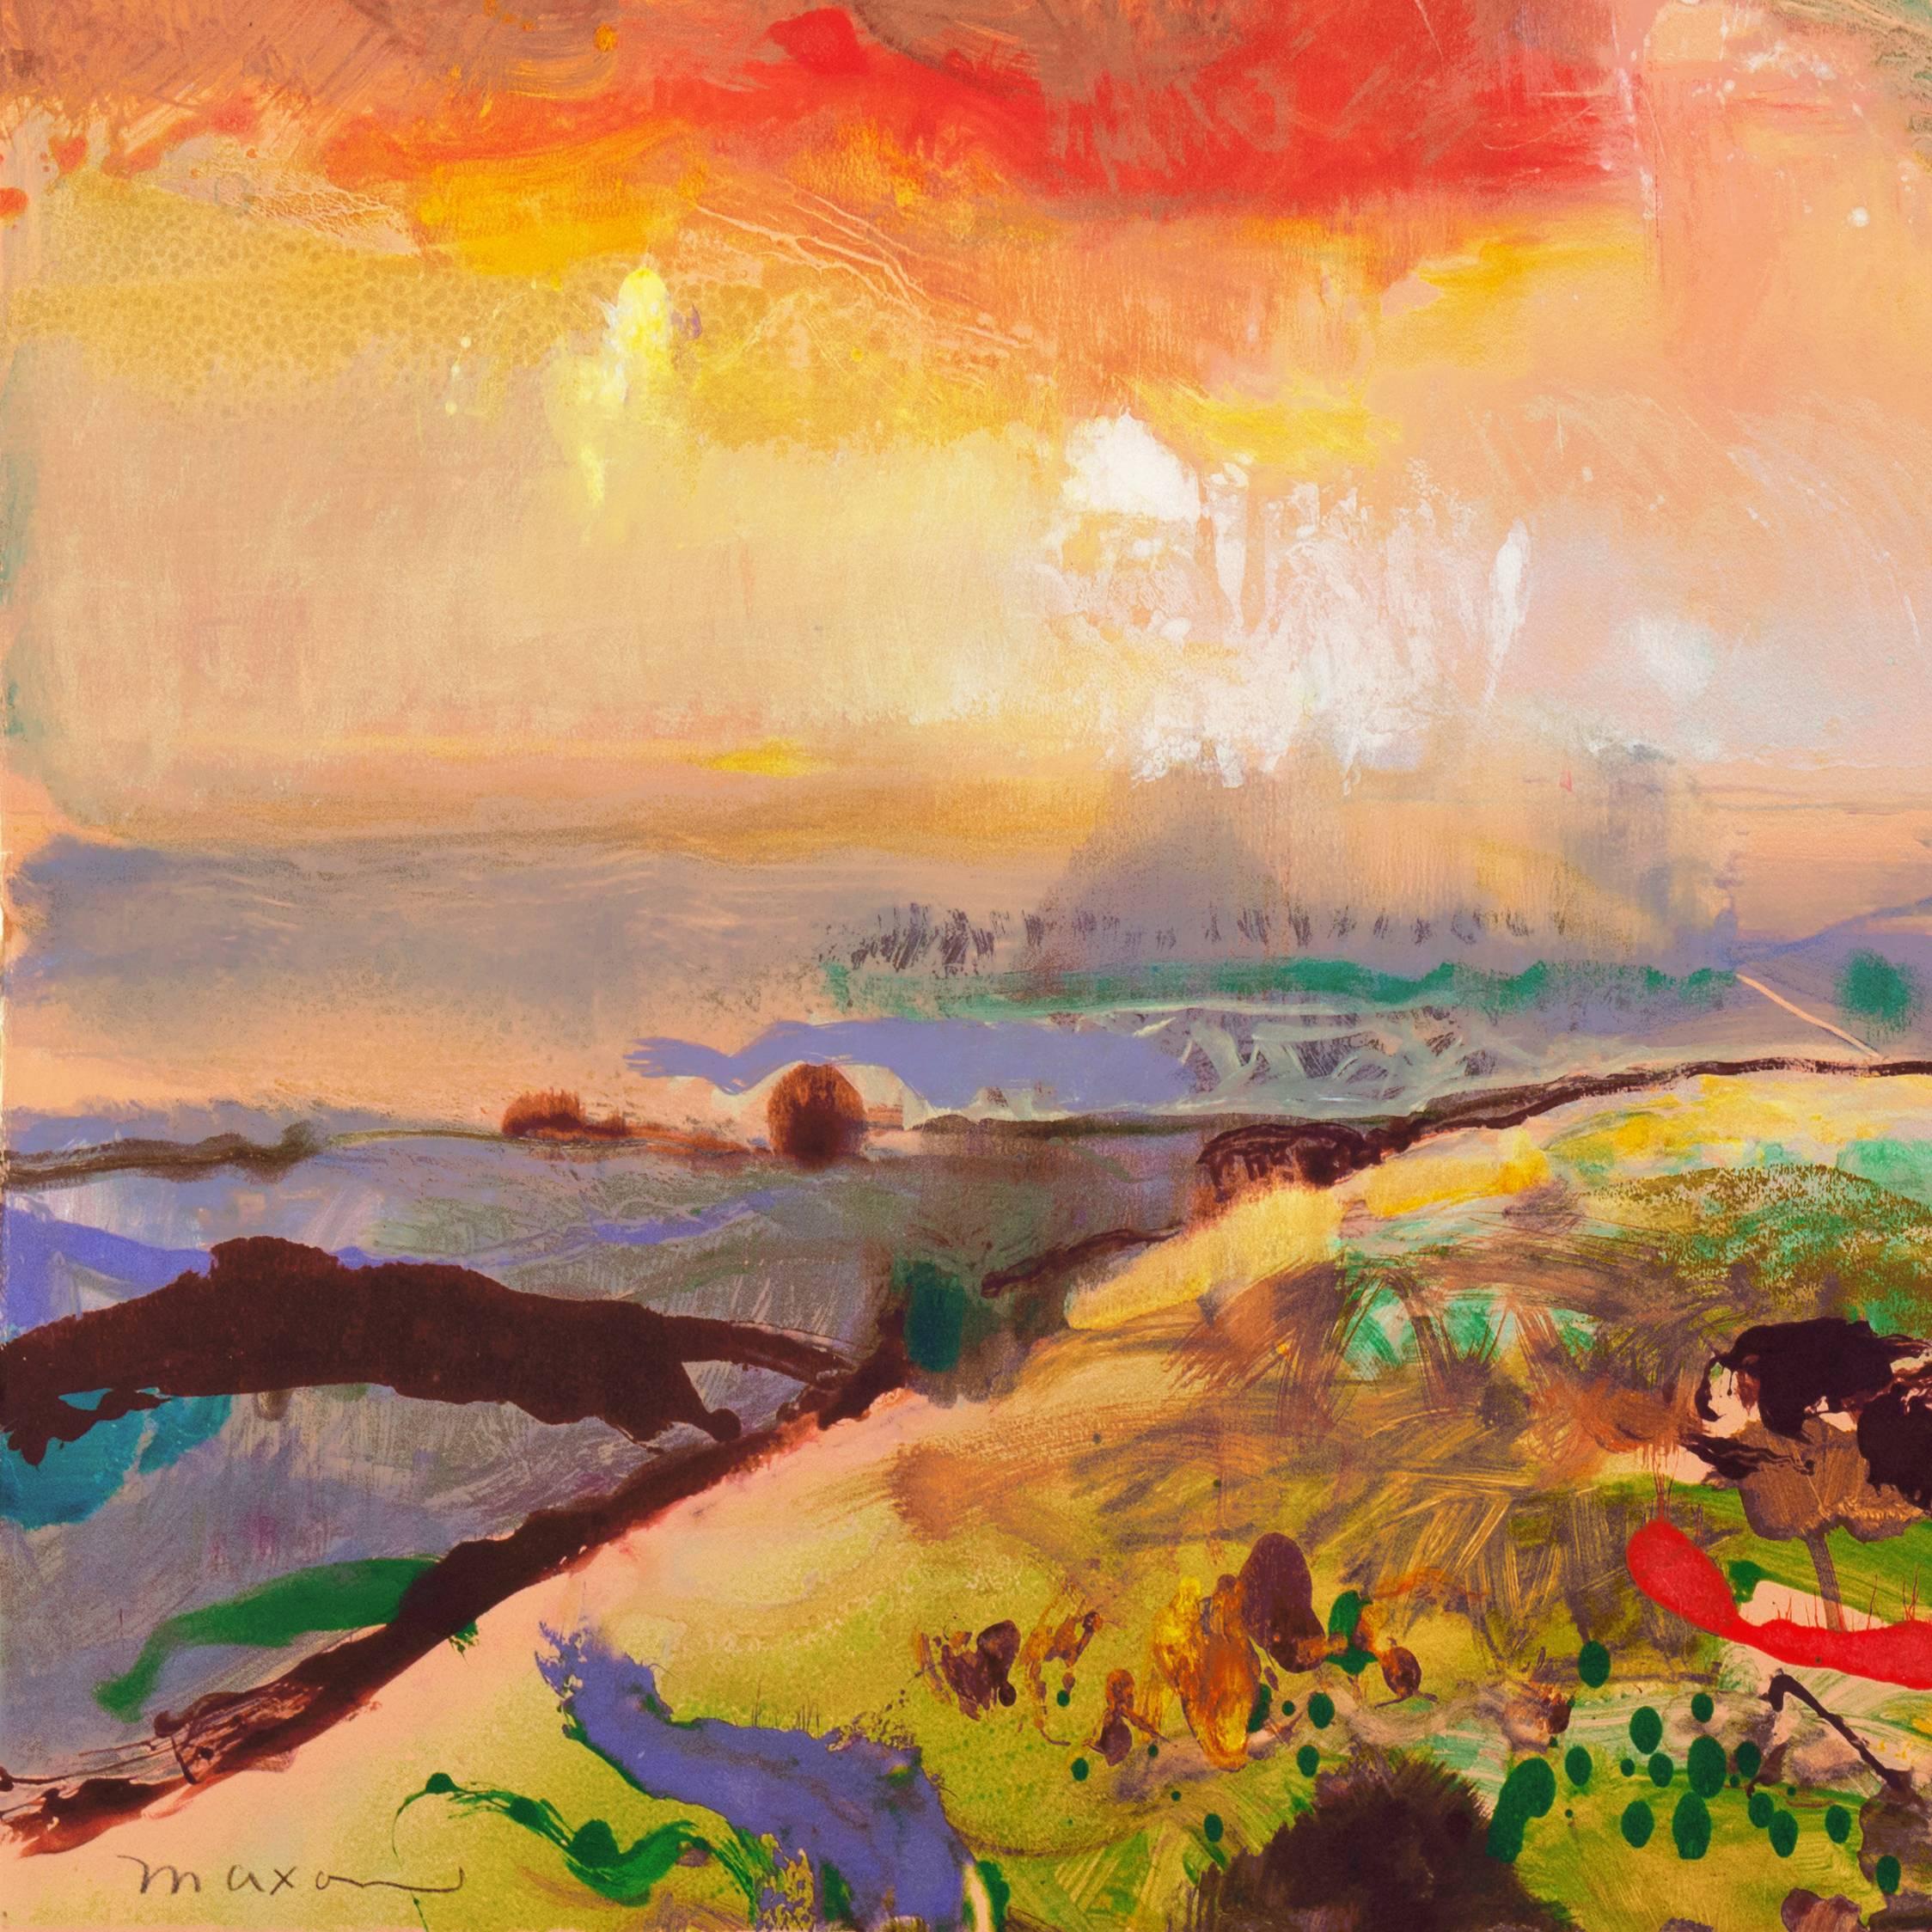 Un paysage monotype de trillium substantiel montrant une vue des champs cultivés et des collines côtières du comté de Monterey, en Californie, baignés dans la lueur d'un coucher de soleil radieux.

Signée en bas à gauche, 